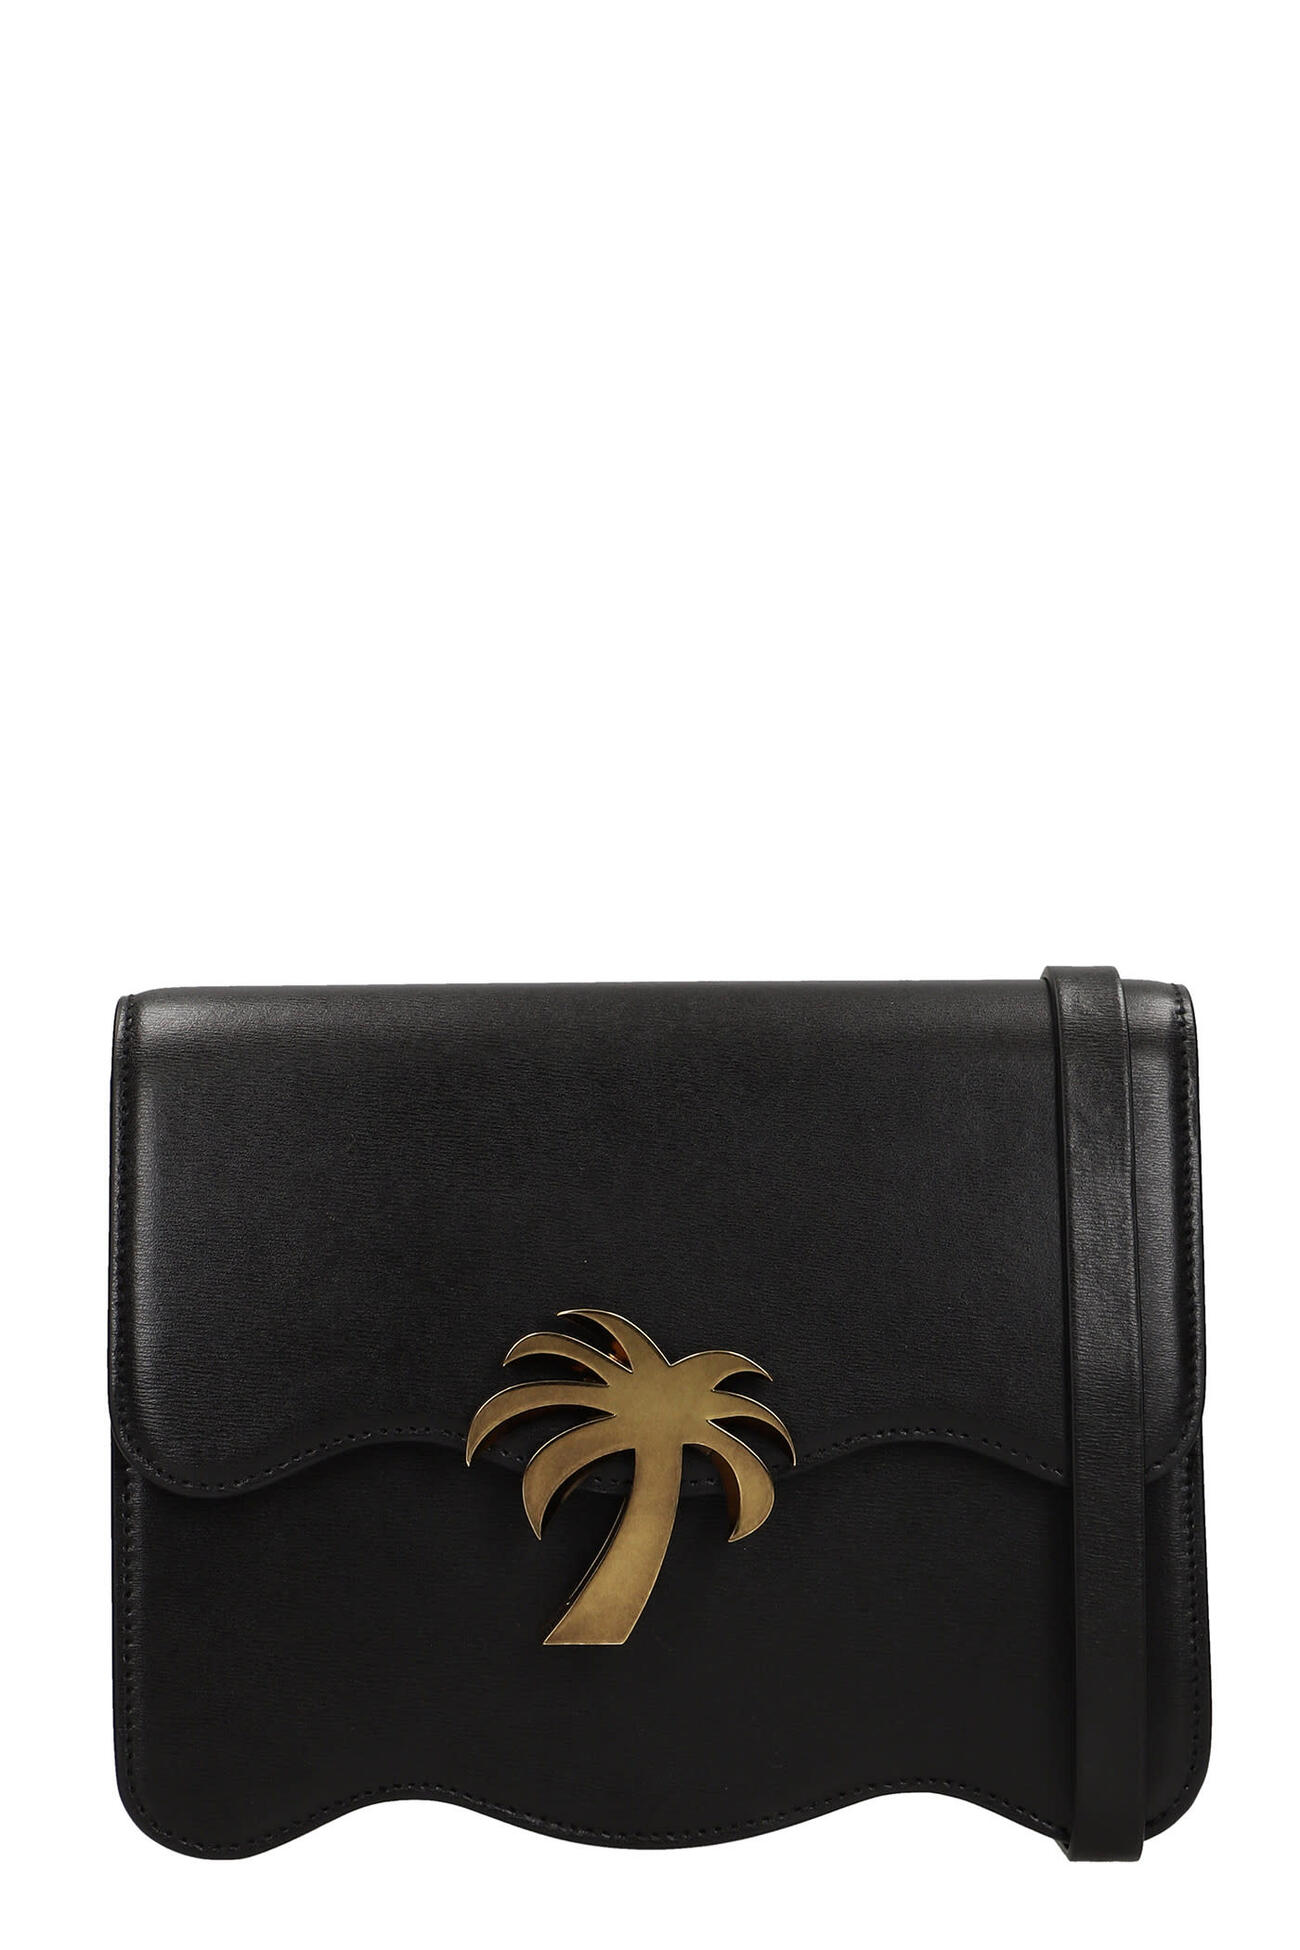 Palm Angels Shoulder Bag In Black Polyester